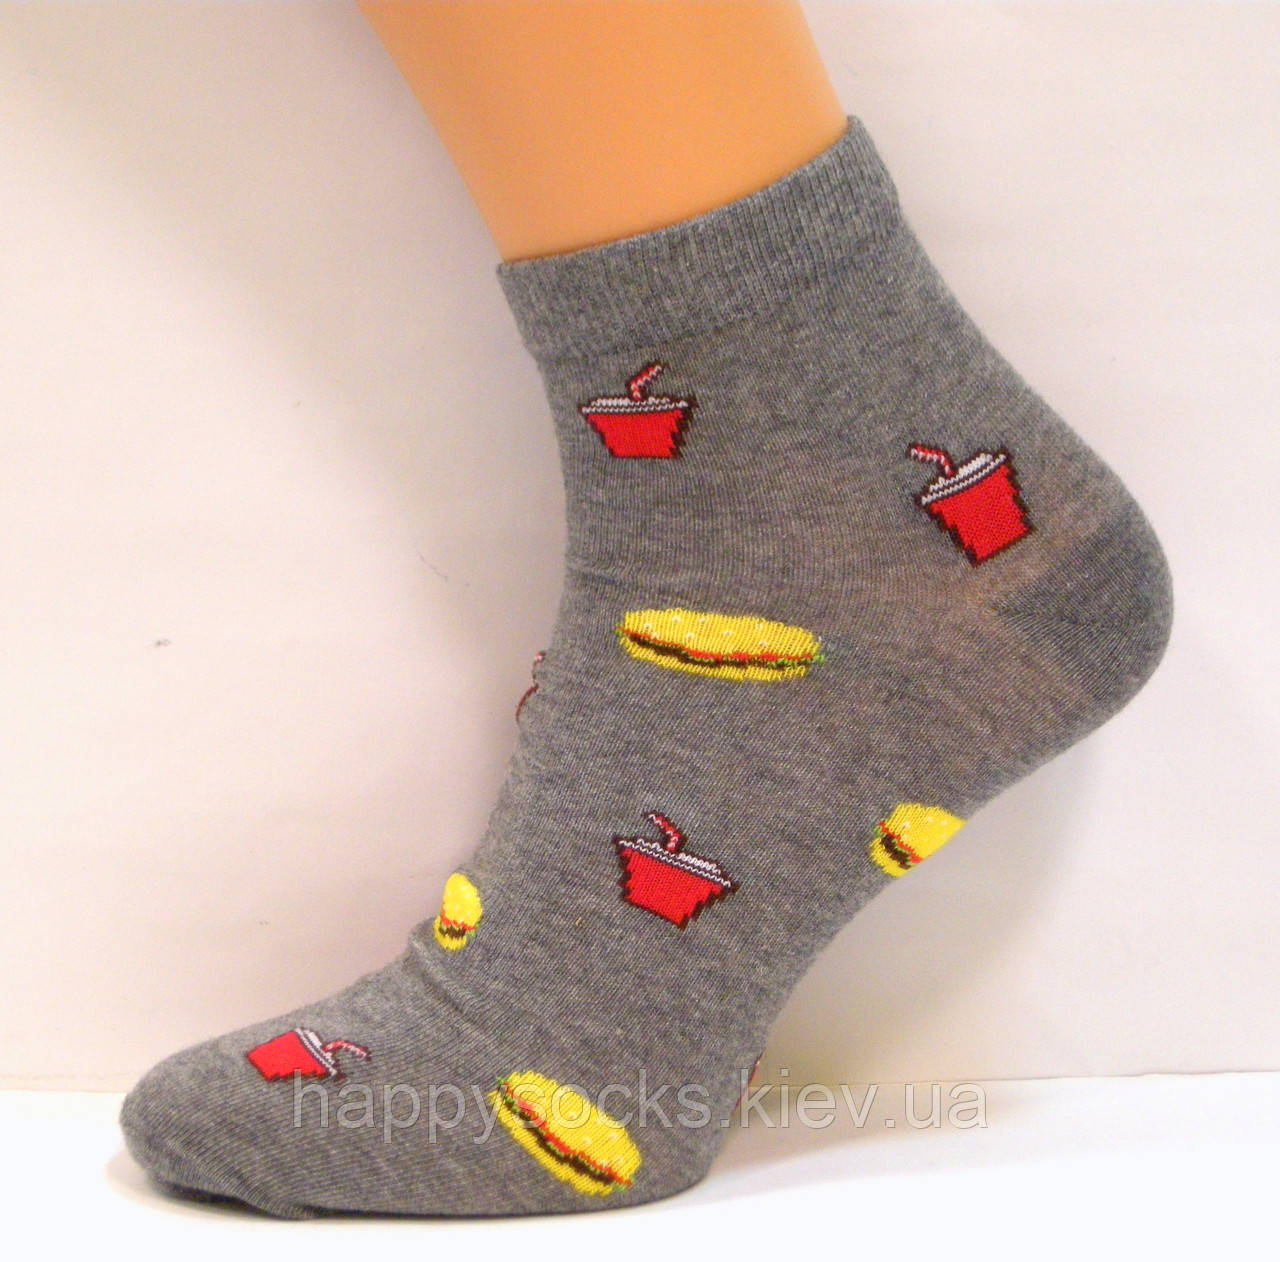 Цветные носки хлопковые с рисунком фастфуд